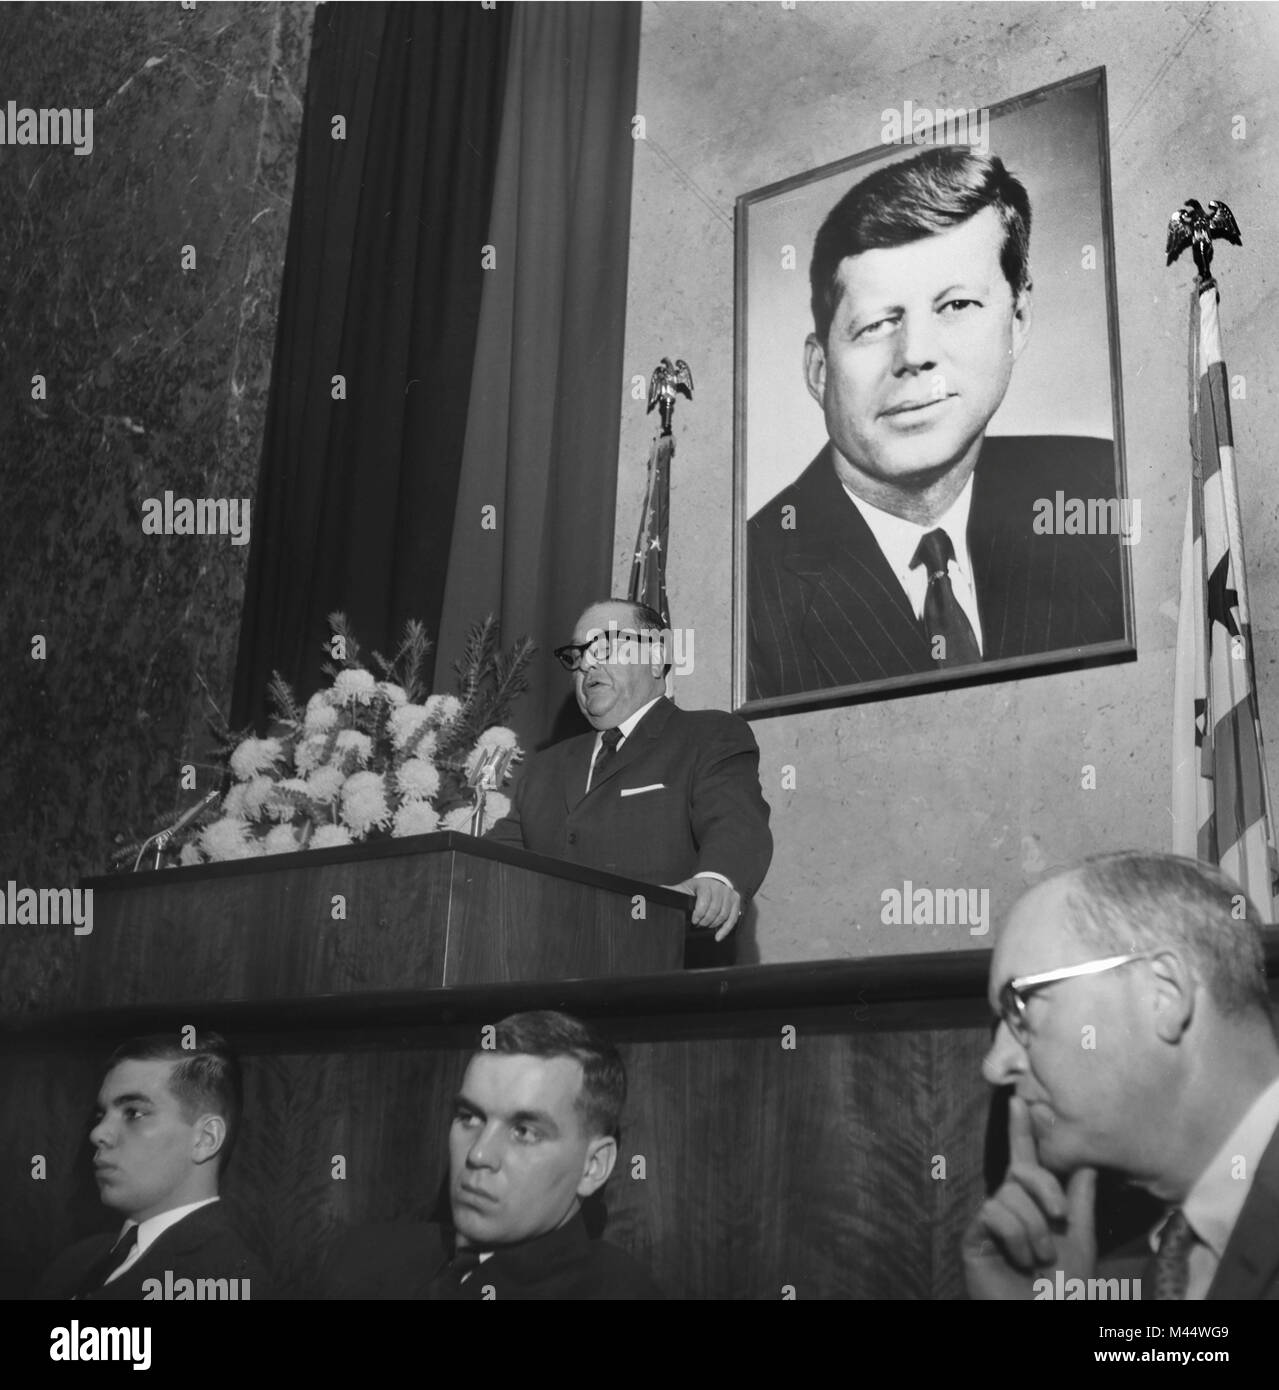 Der Bürgermeister von Chicago Ernest Hemingway spricht mit einer Trauerfeier für Präsident Kennedy in Chicago im Jahre 1963. Vor Sitzen Daly Söhne John, Links, und zukünftige Bürgermeister, Richard M. Daley. Stockfoto